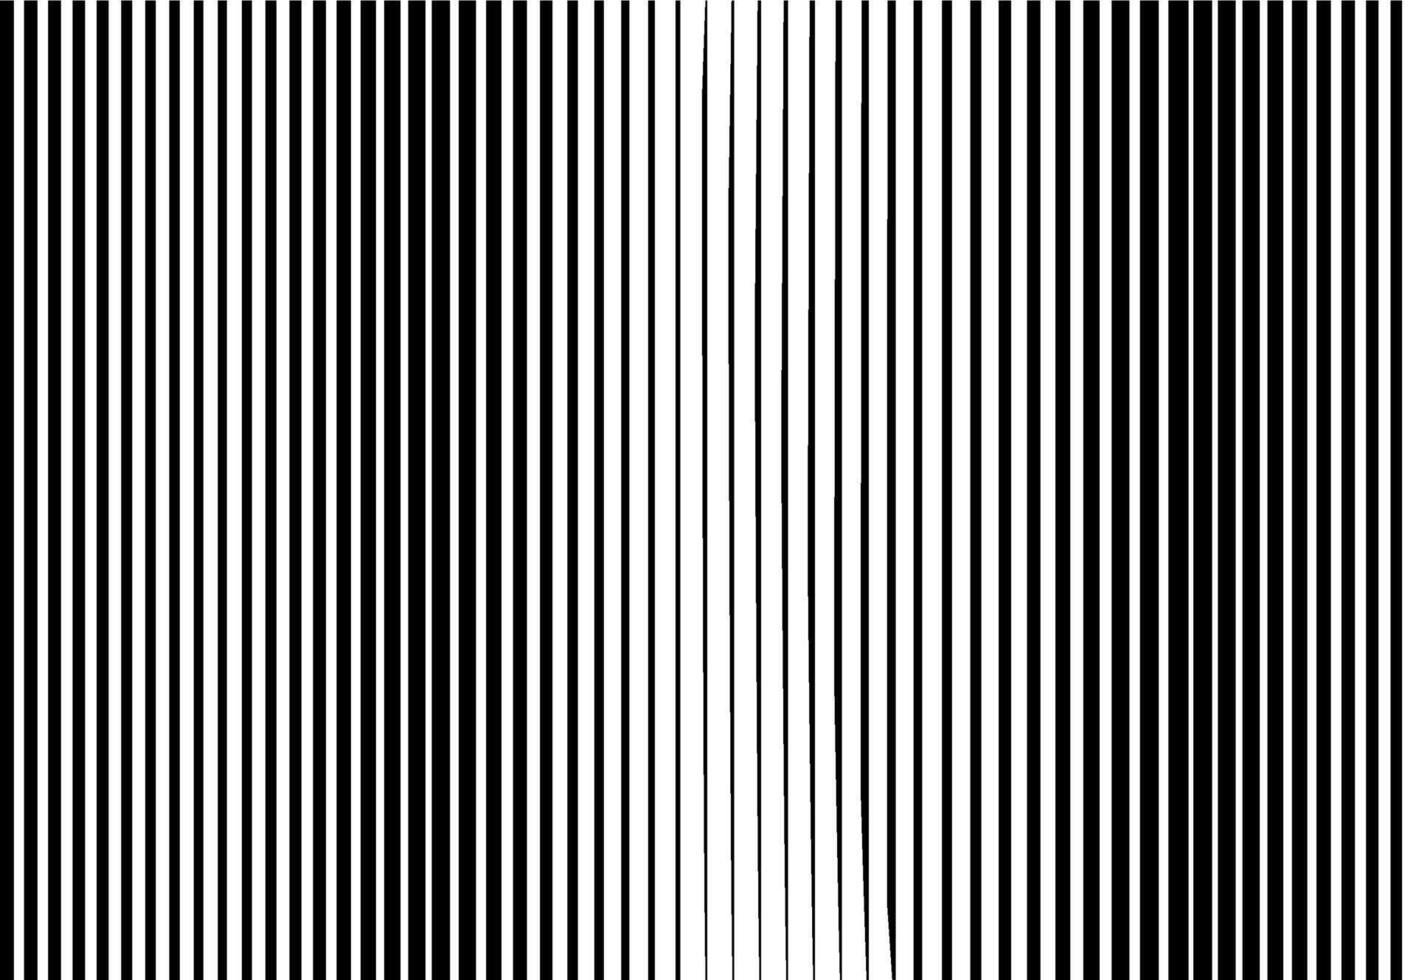 svartvit vertikal halvton lutning Ränder bakgrund. kommande från tunn till tjock. abstrakt geometrisk mönster med parallell rader. vektor